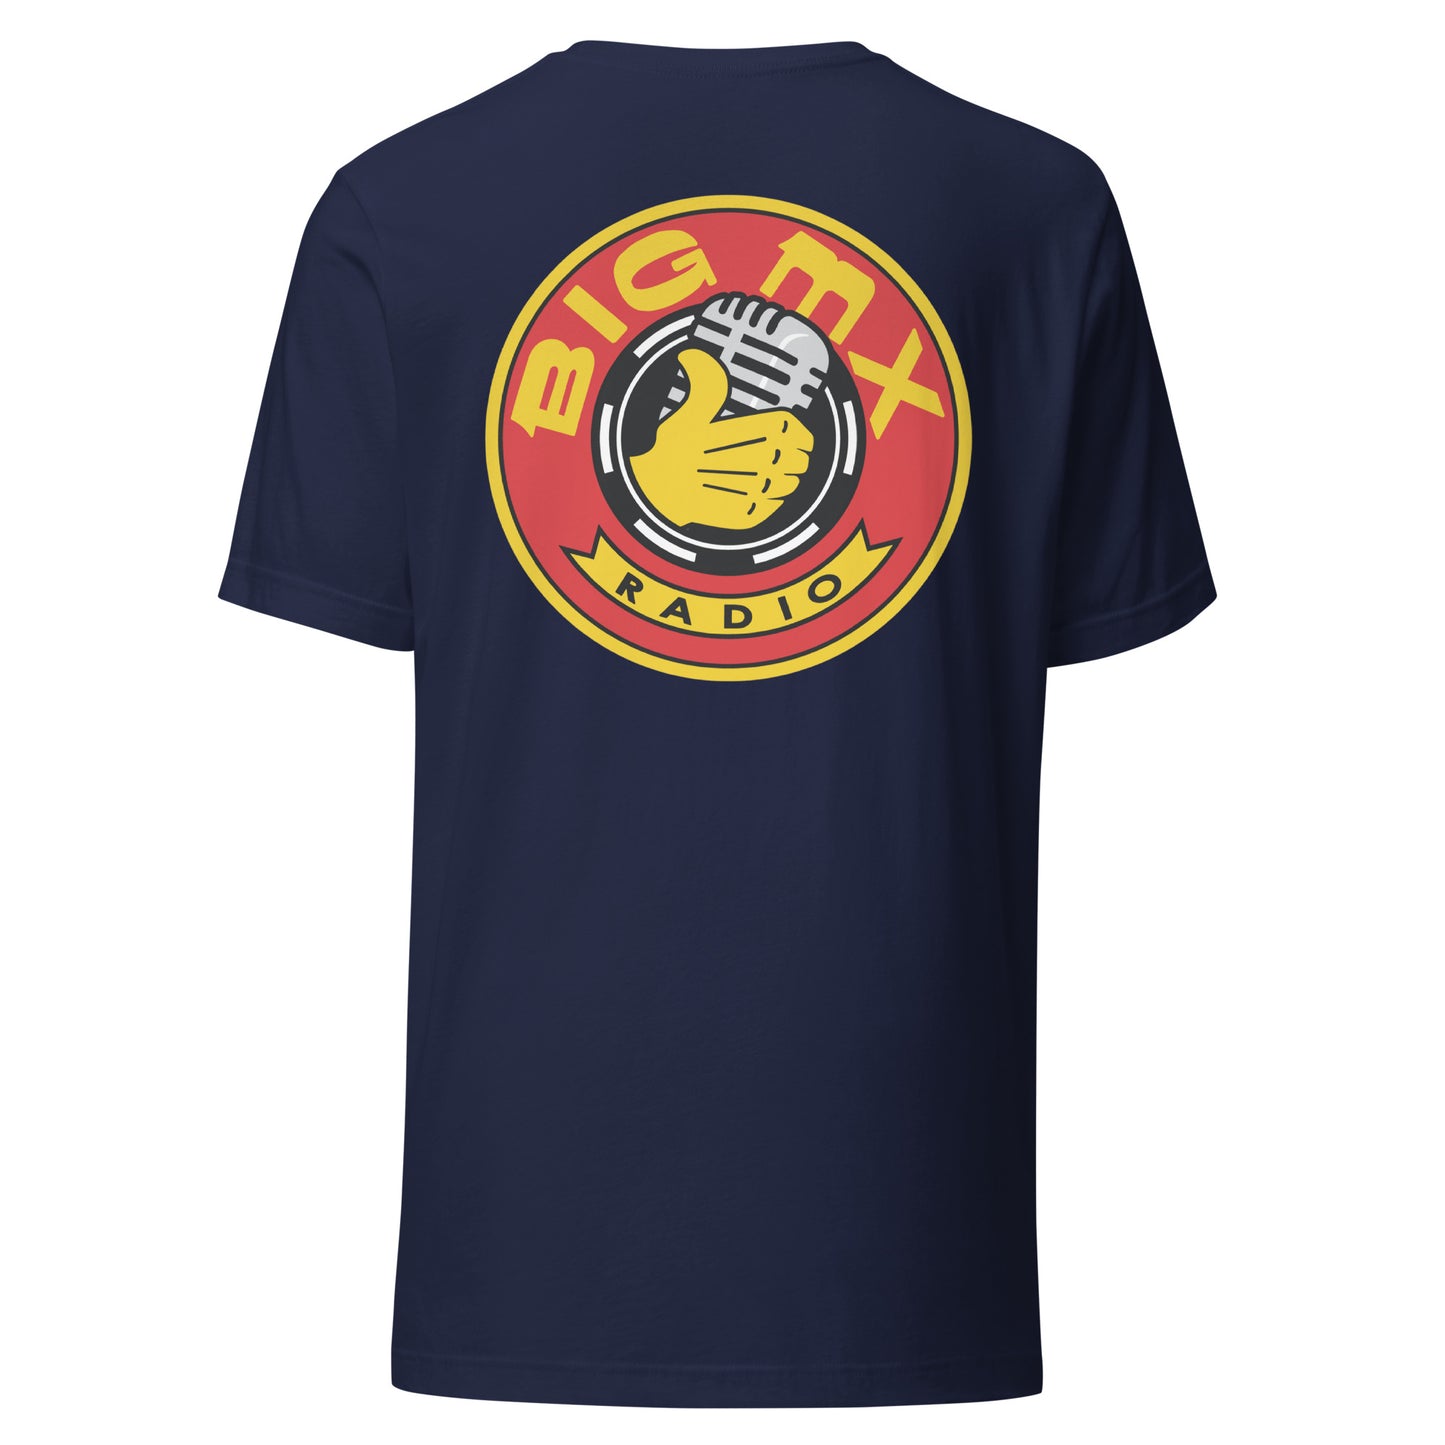 Big MX Radio Unisex T-Shirt